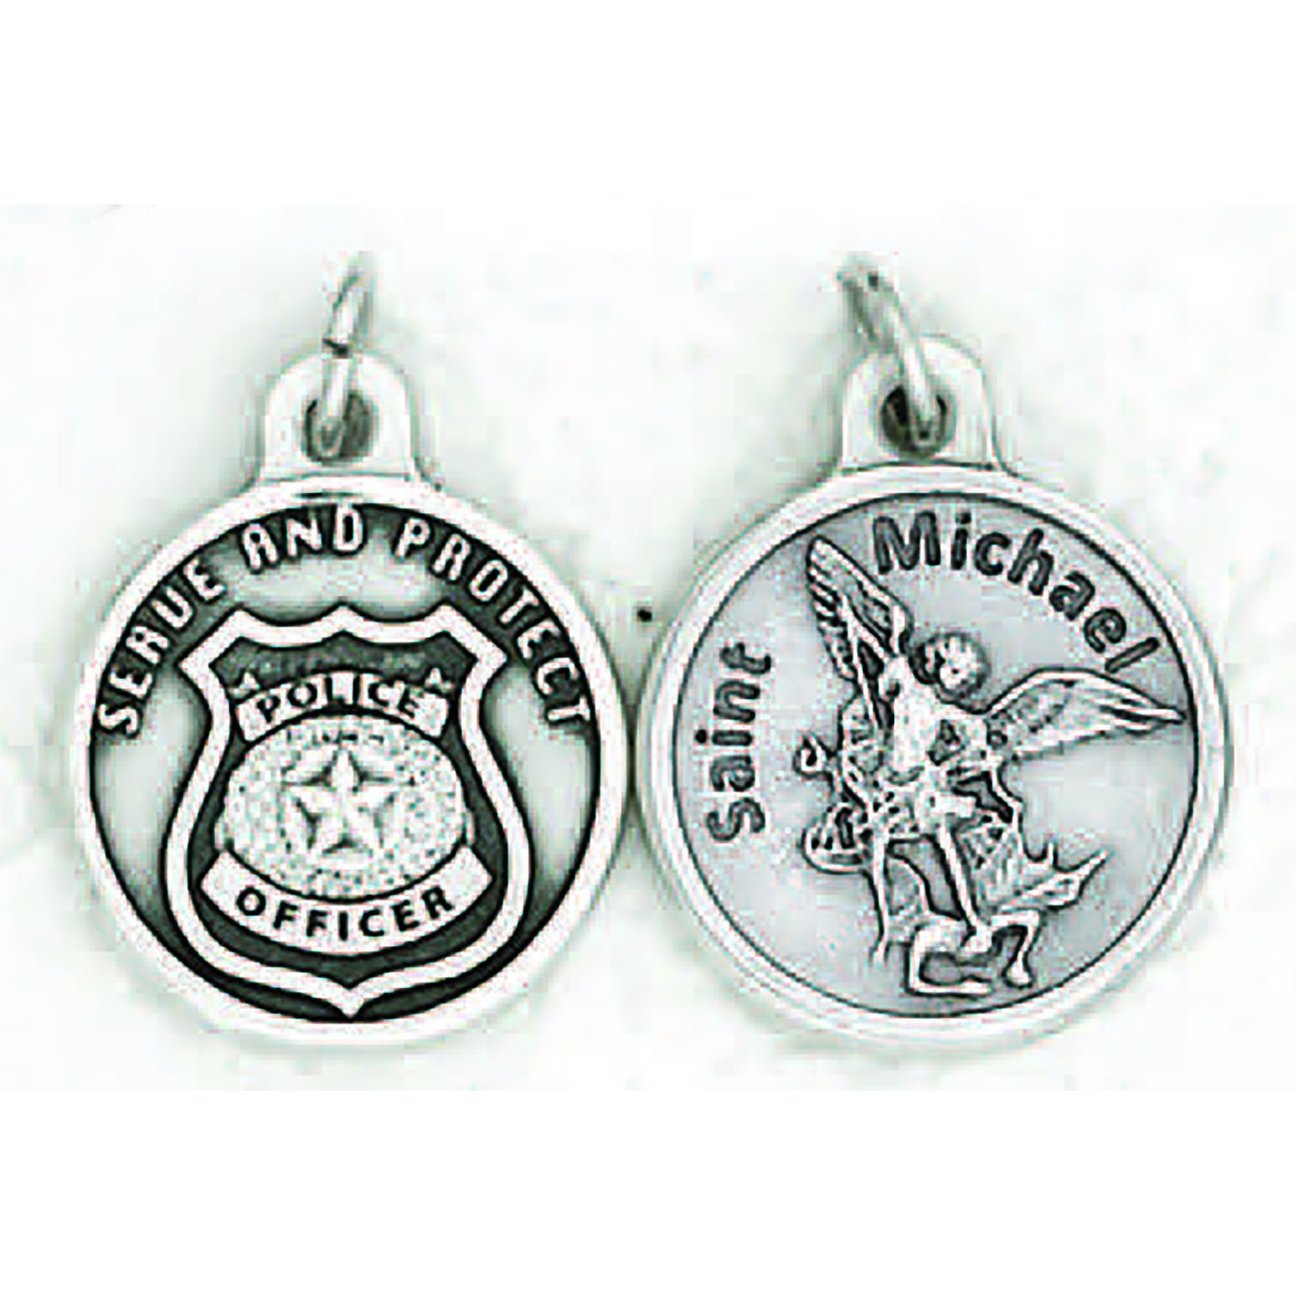 St Michael Police Officer Medal